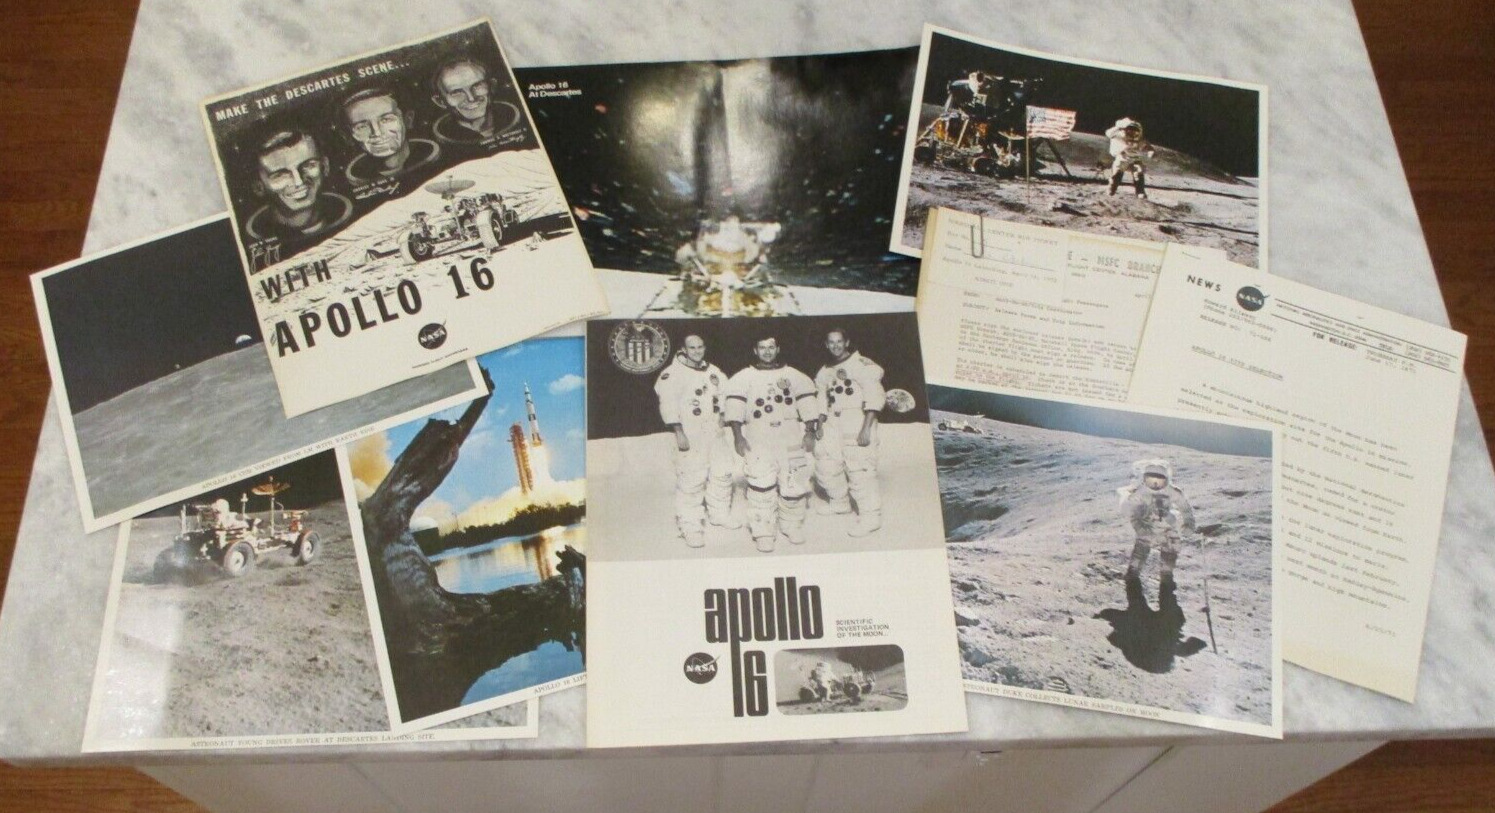 1971-72 NASA MSFC APOLLO 16 SITE SELECTION MEMO+LAUNCH TRIP PKT MEMO w/BUS TKT++